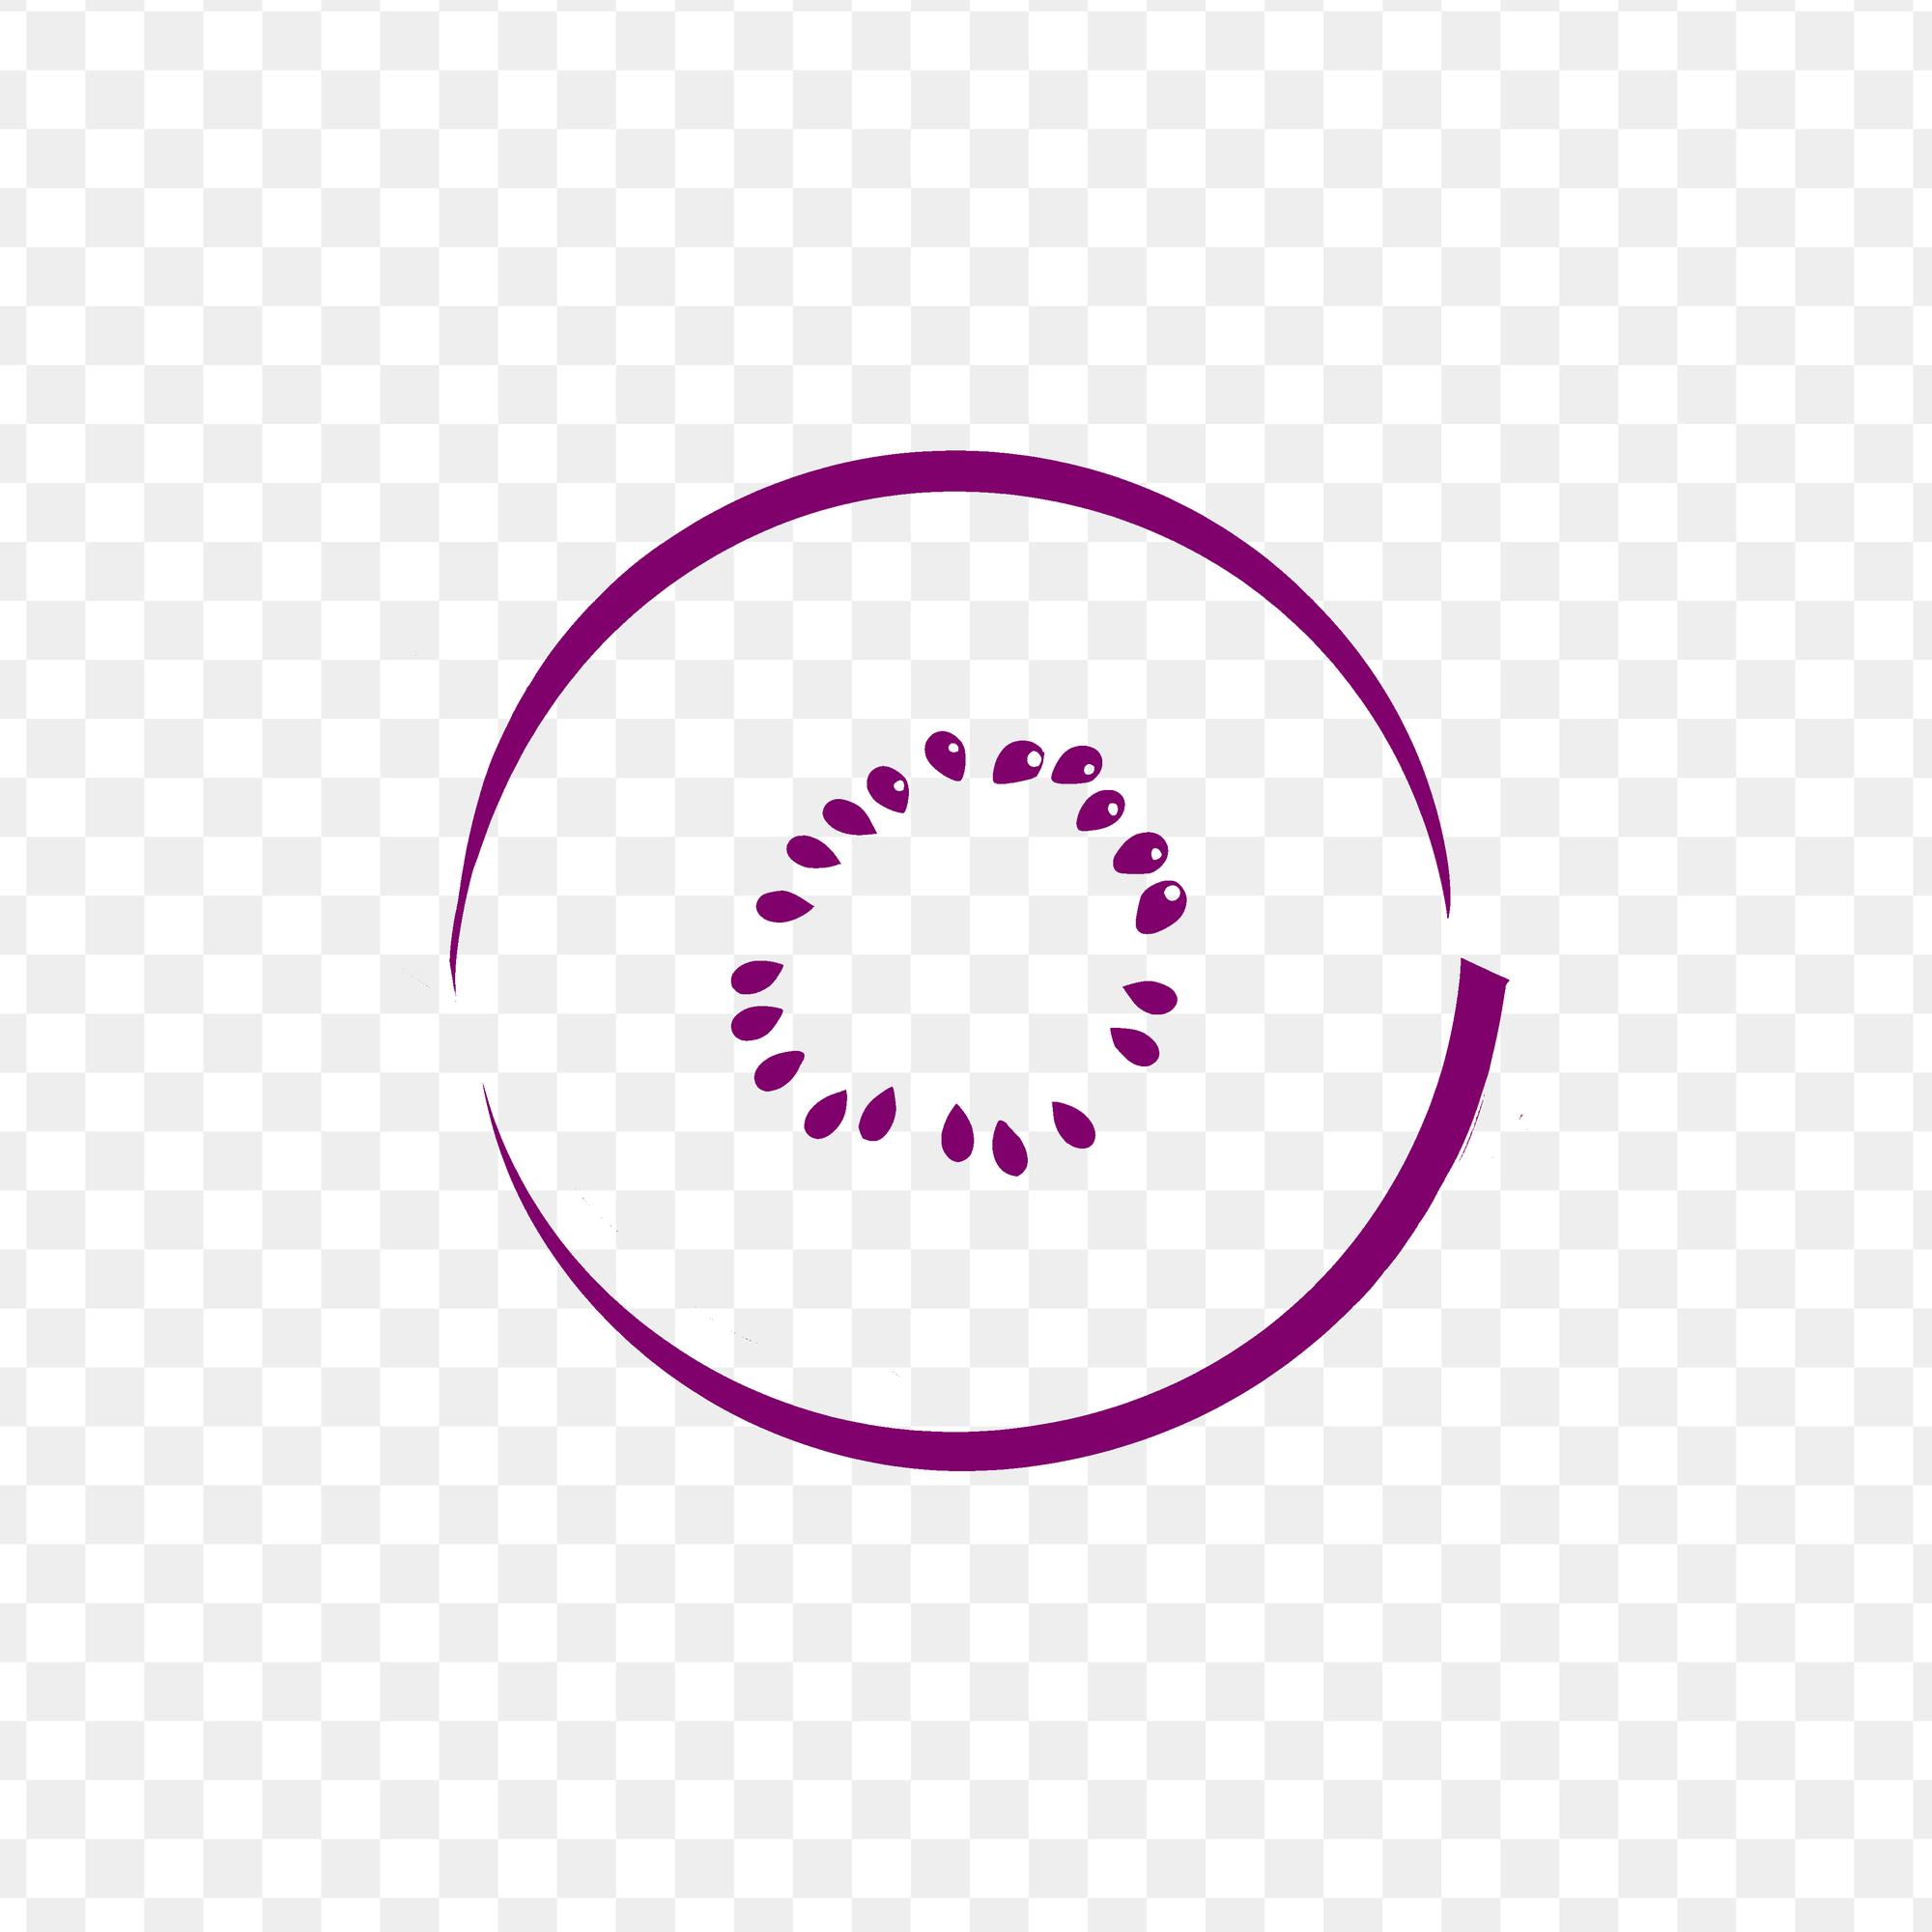 PSD un círculo de puntos está dibujado sobre un fondo blanco